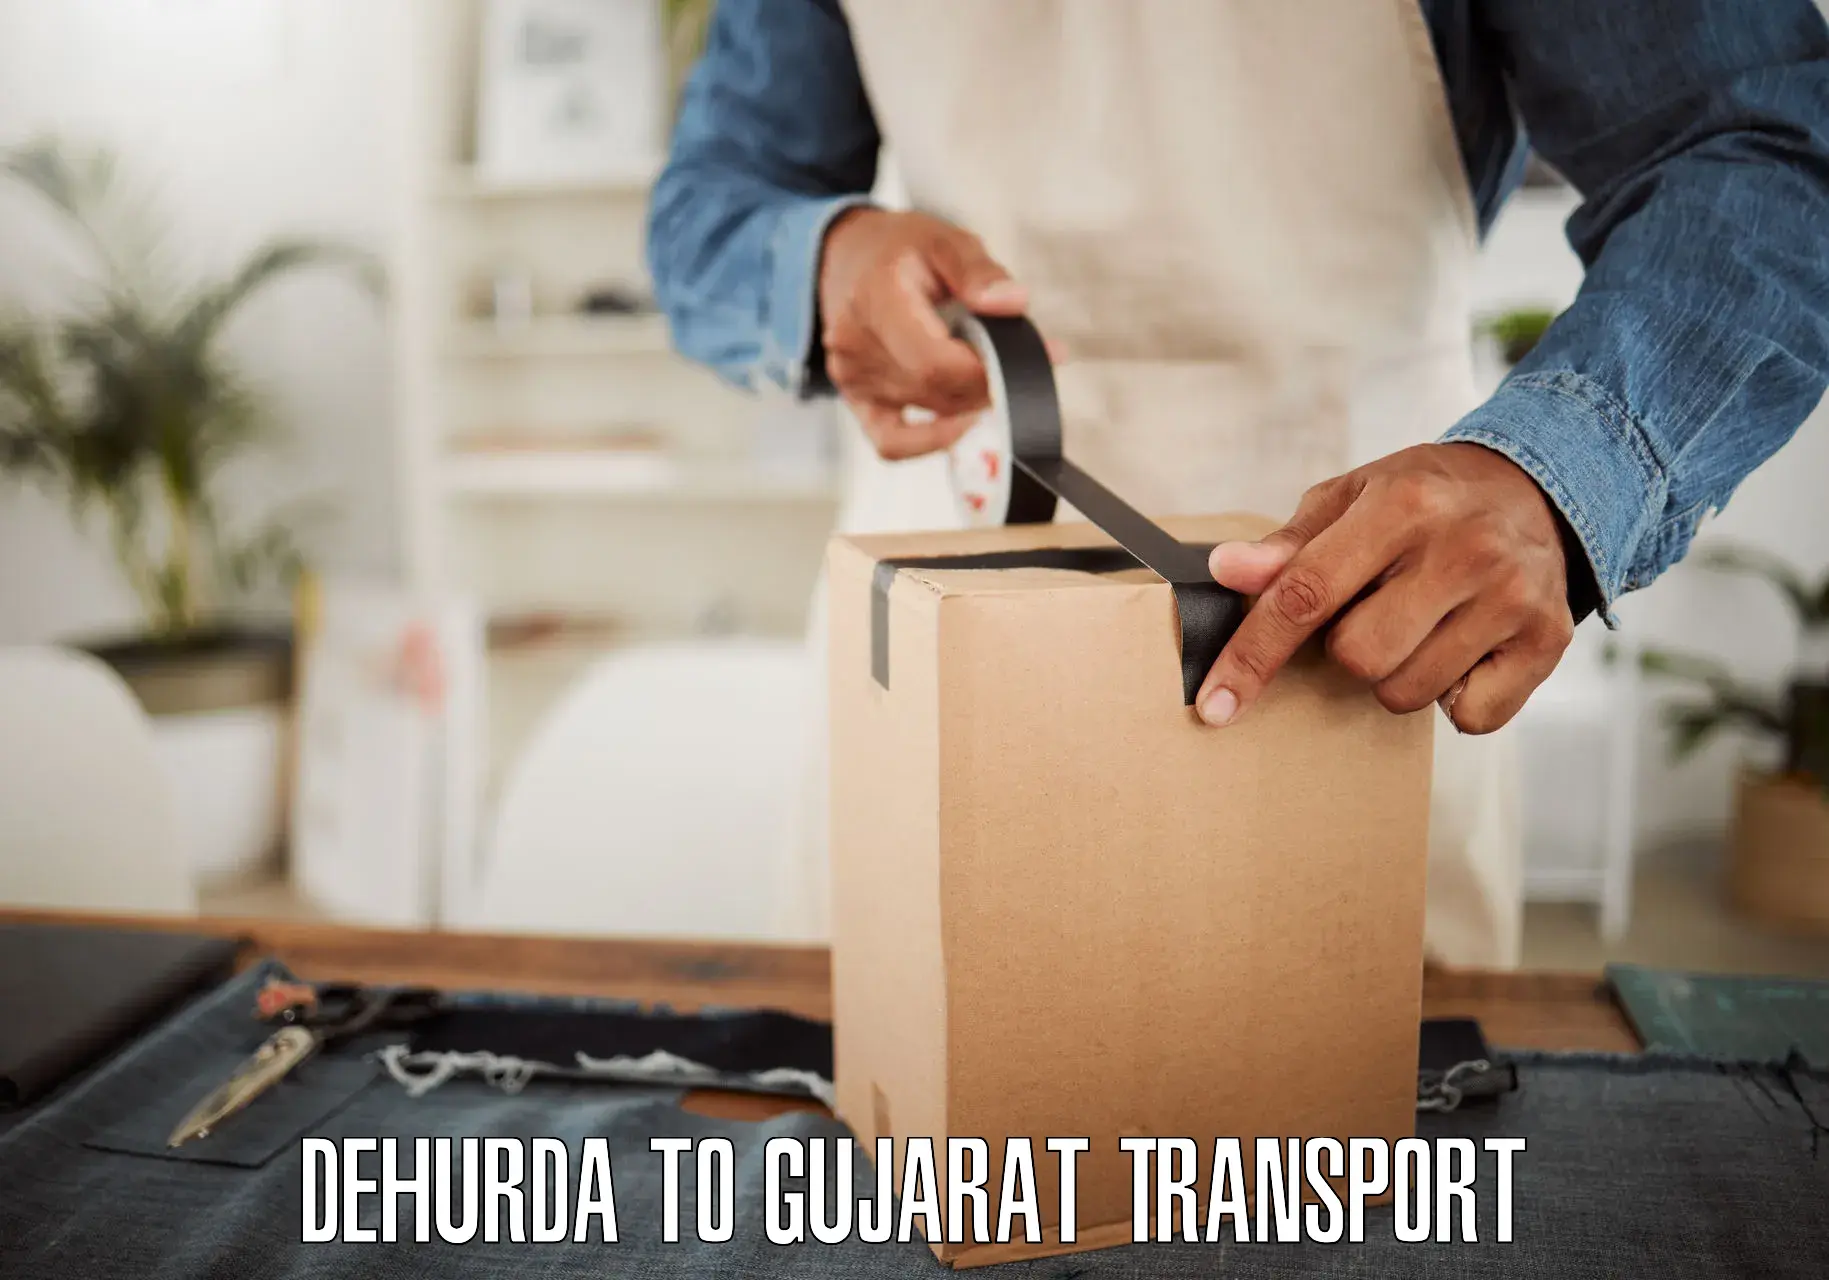 Parcel transport services Dehurda to Jhagadia